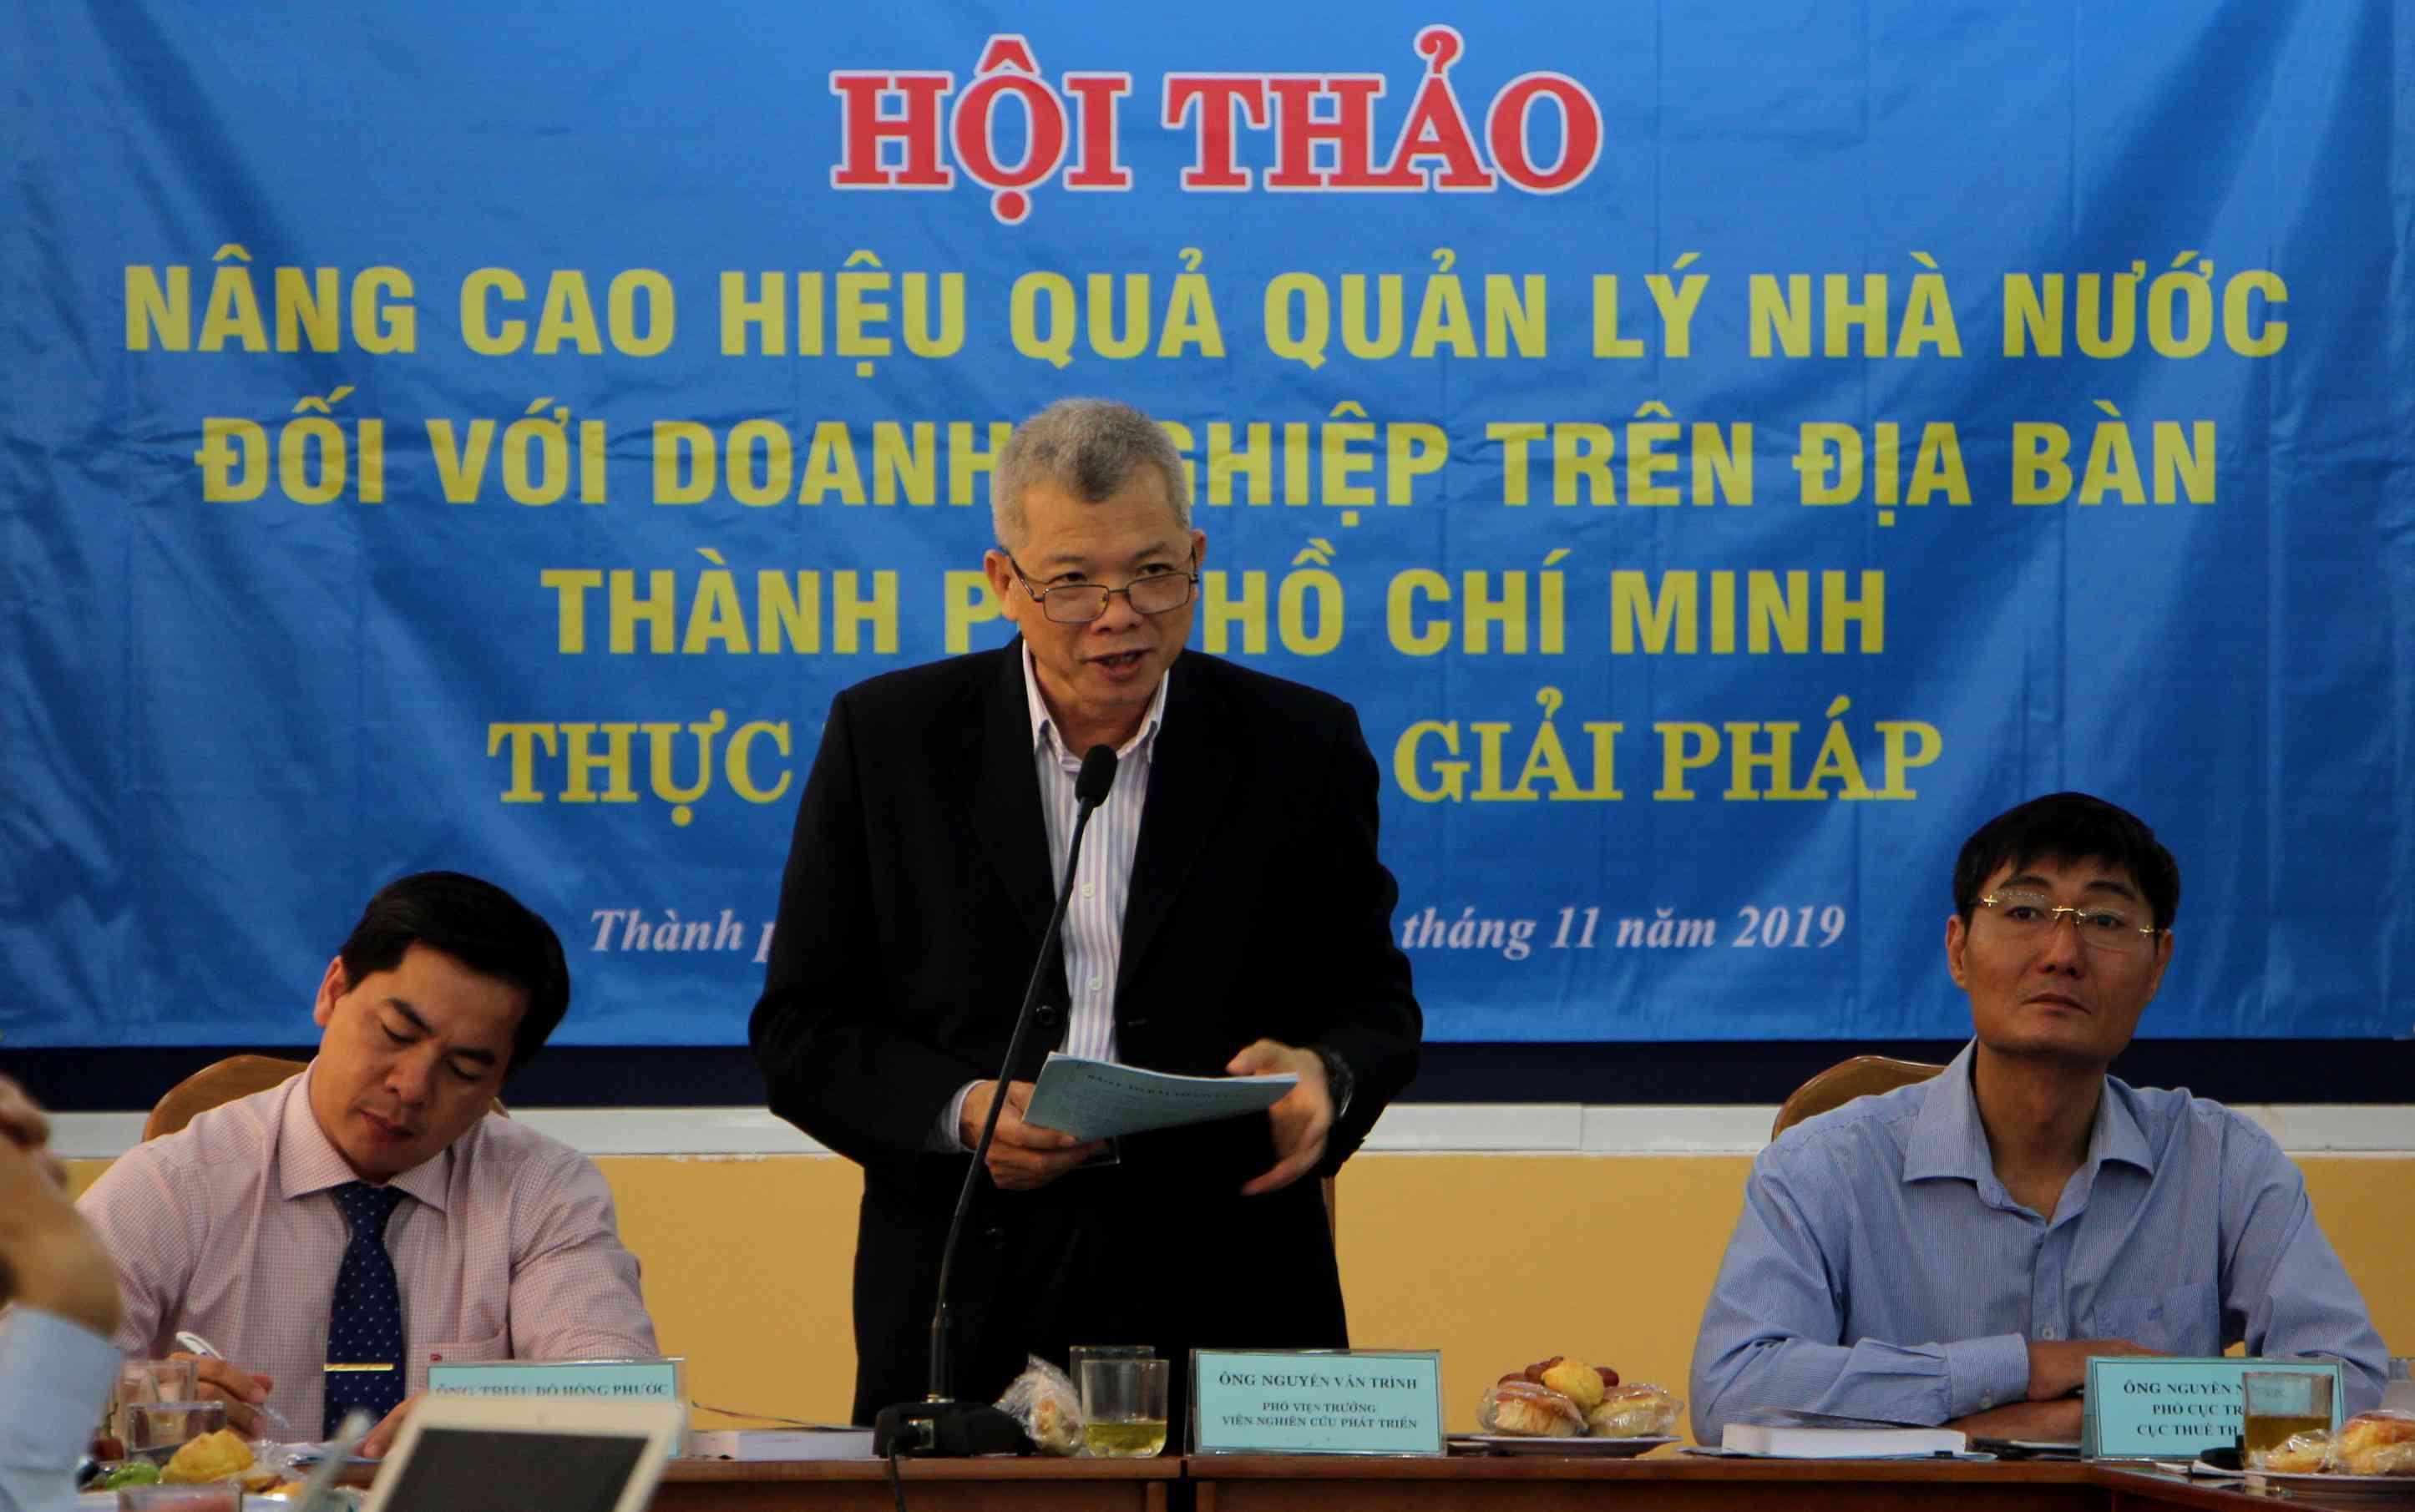 PGS Nguyễn Văn Trình:&nbsp;“Đừng cho cán bộ thuế móc nối với doanh nghiệp để cưa đôi”